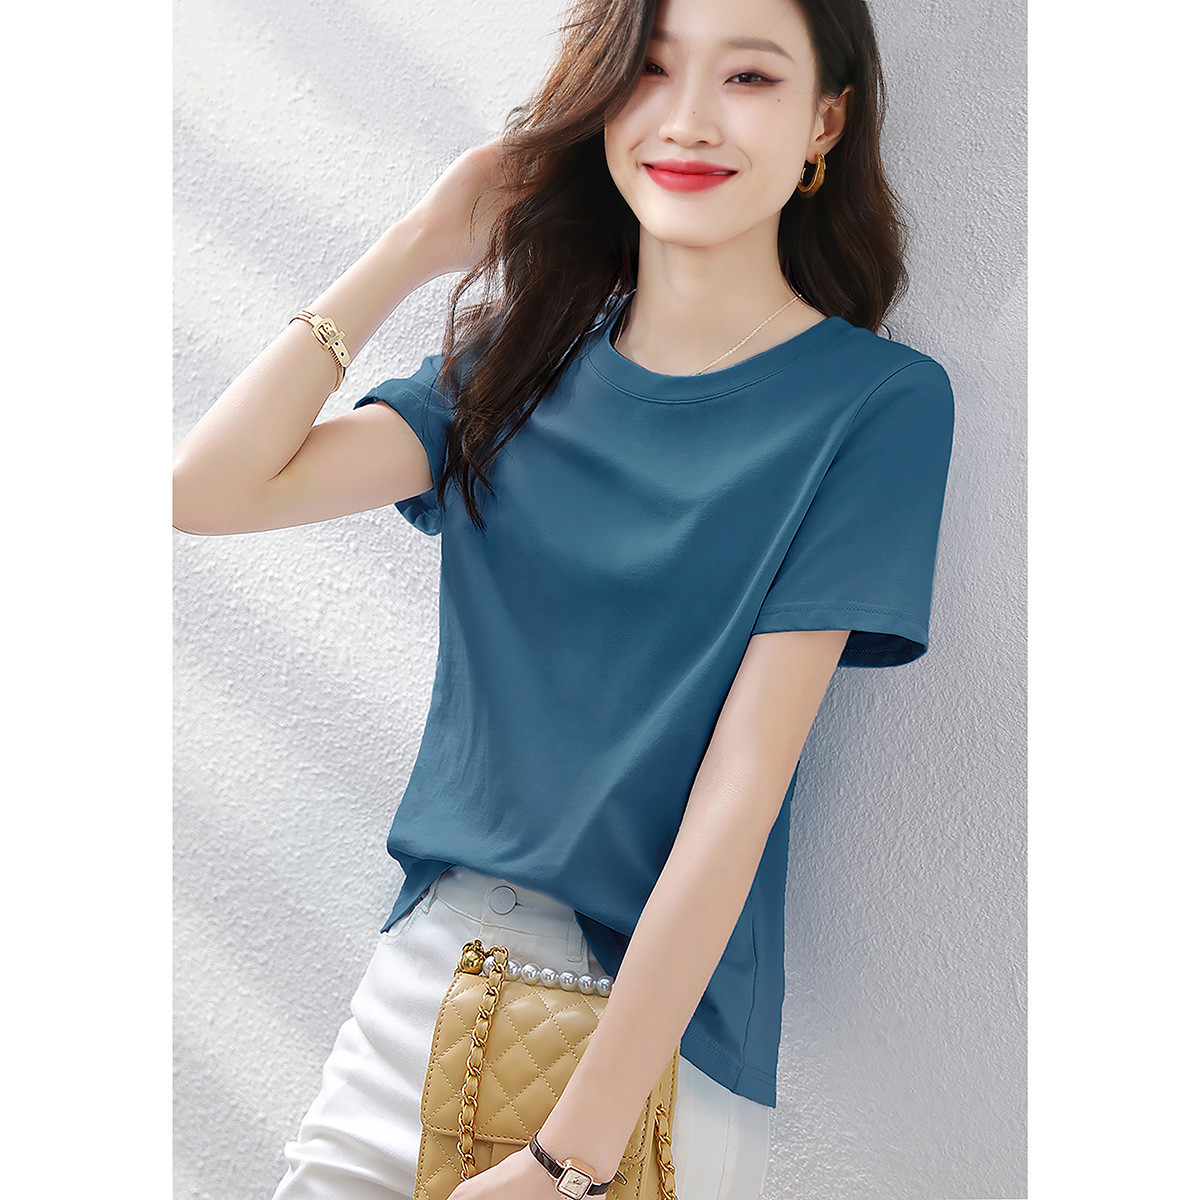 夏季韩版基础百搭简约休闲气质显瘦纯色短袖T恤女式